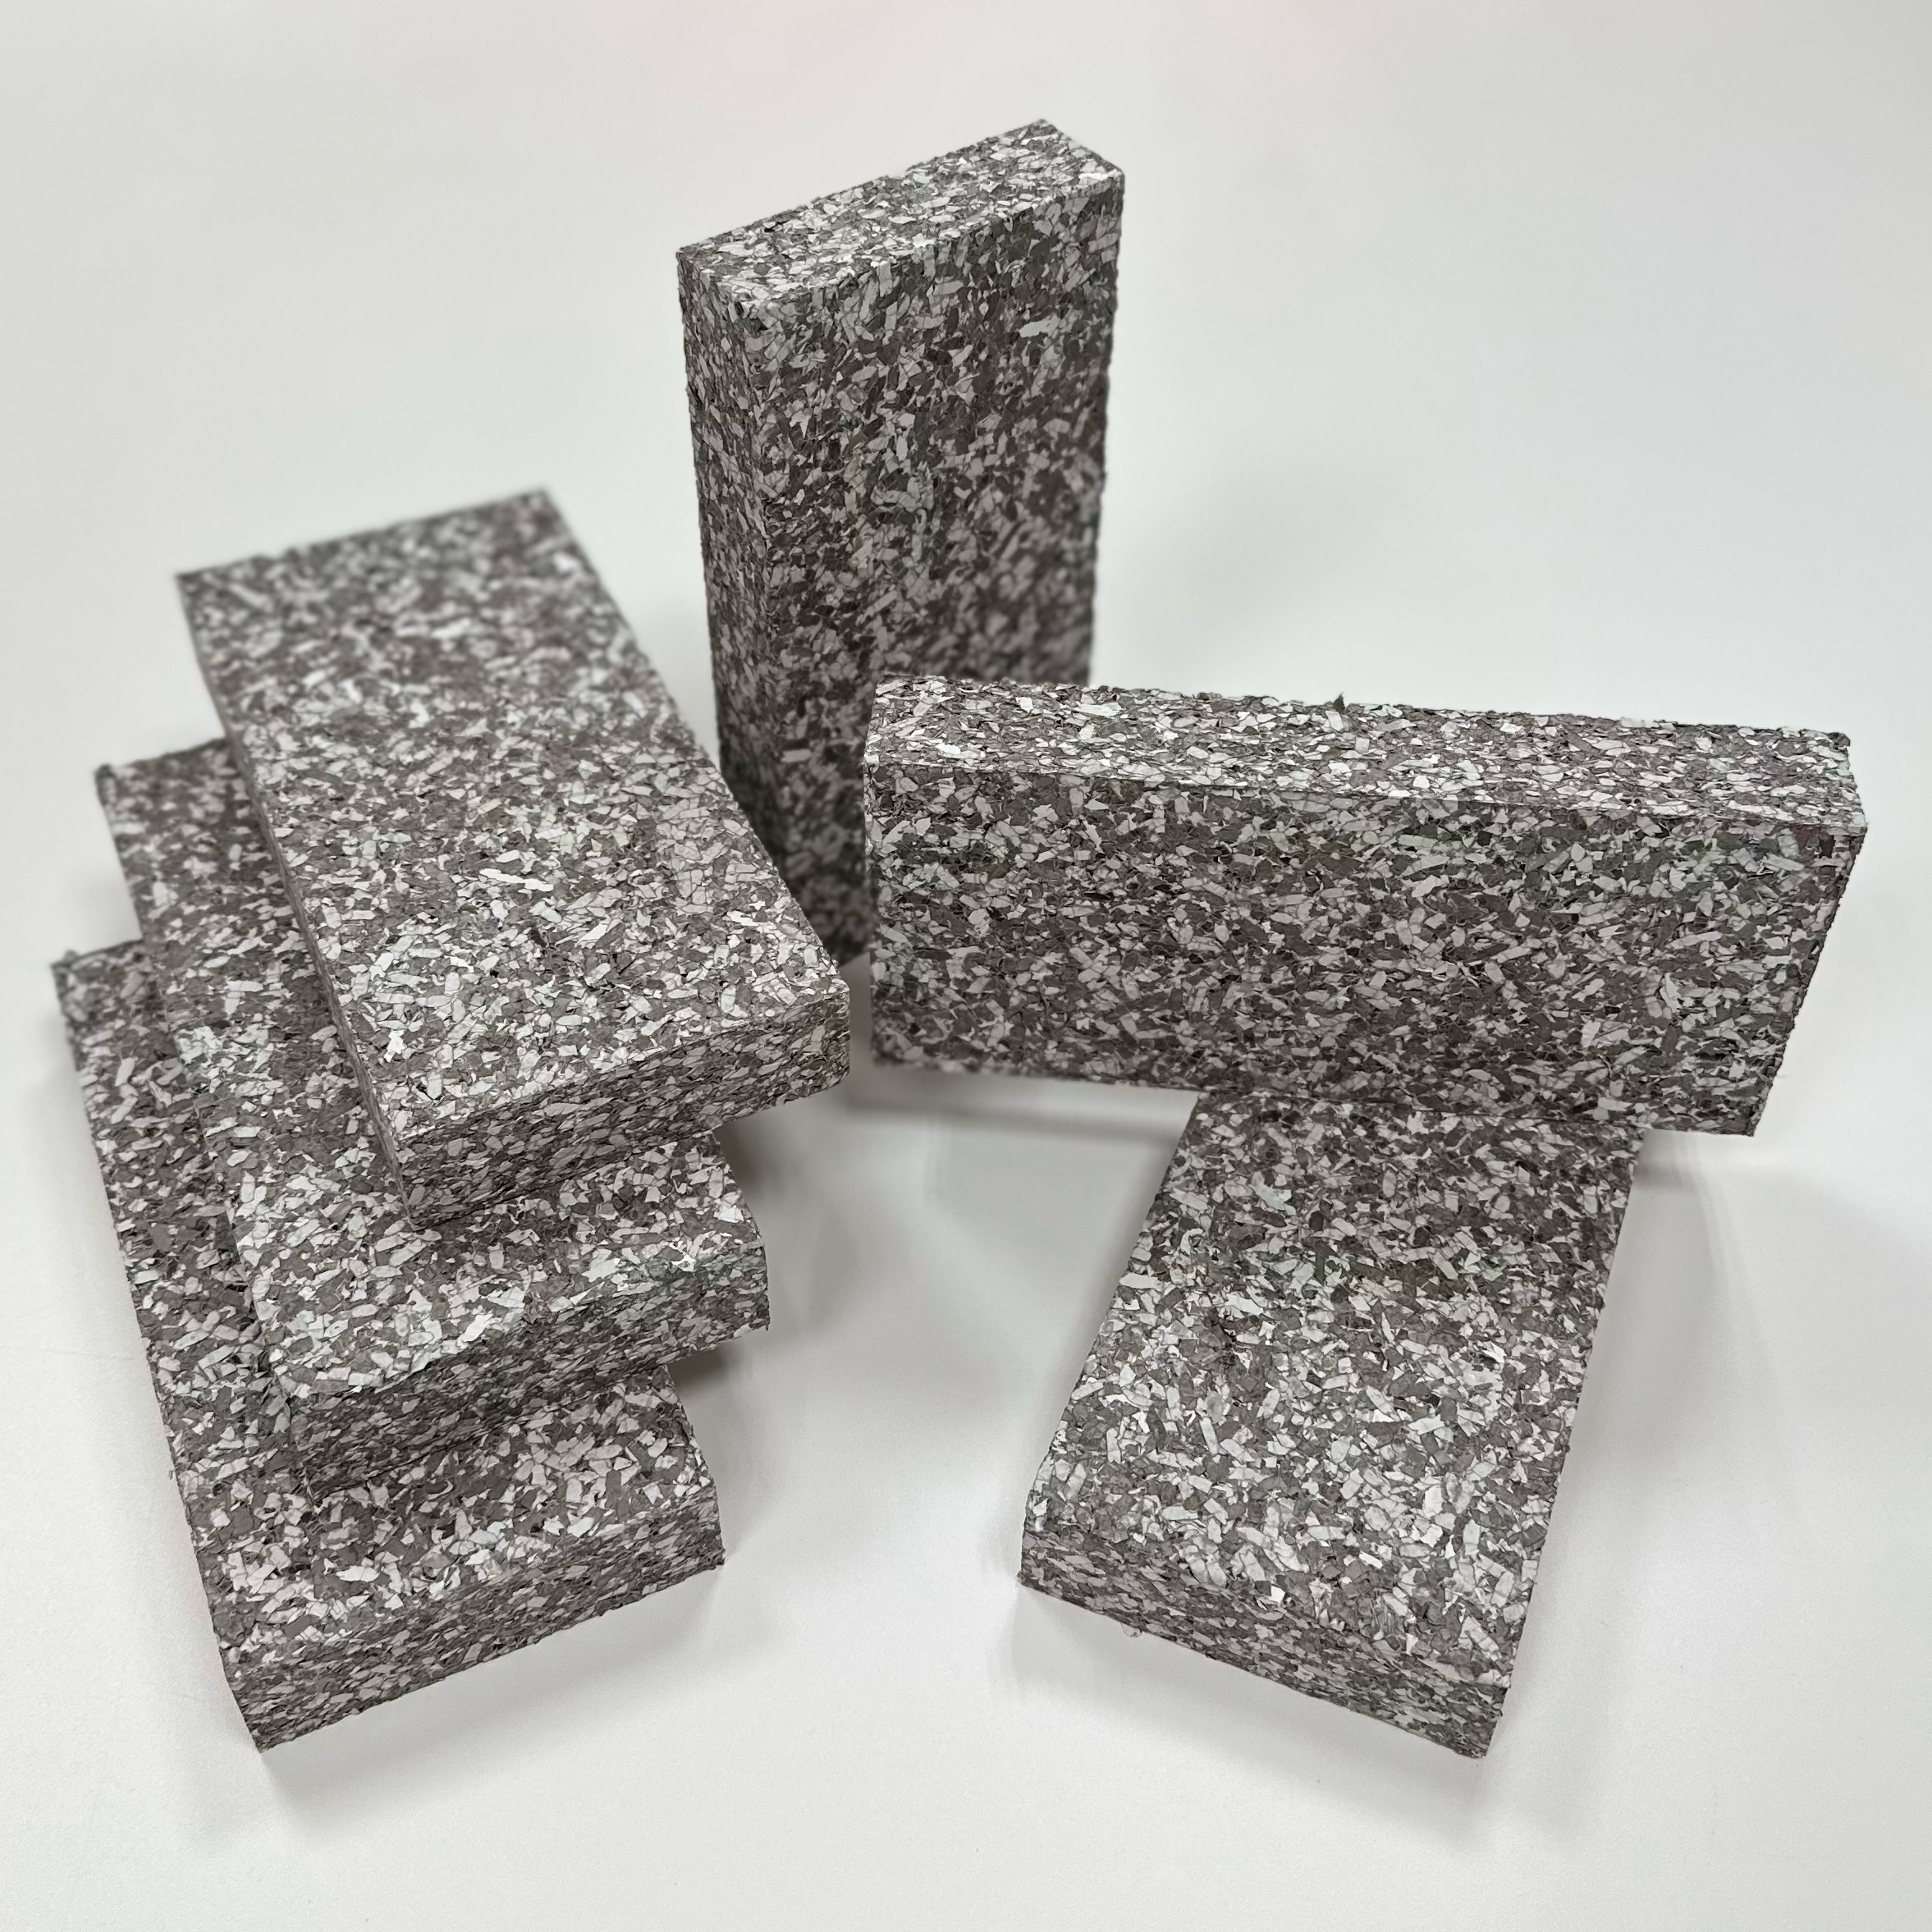 リサイクル困難な感熱紙をブロックに美しくリサイクル | 禁忌品の再